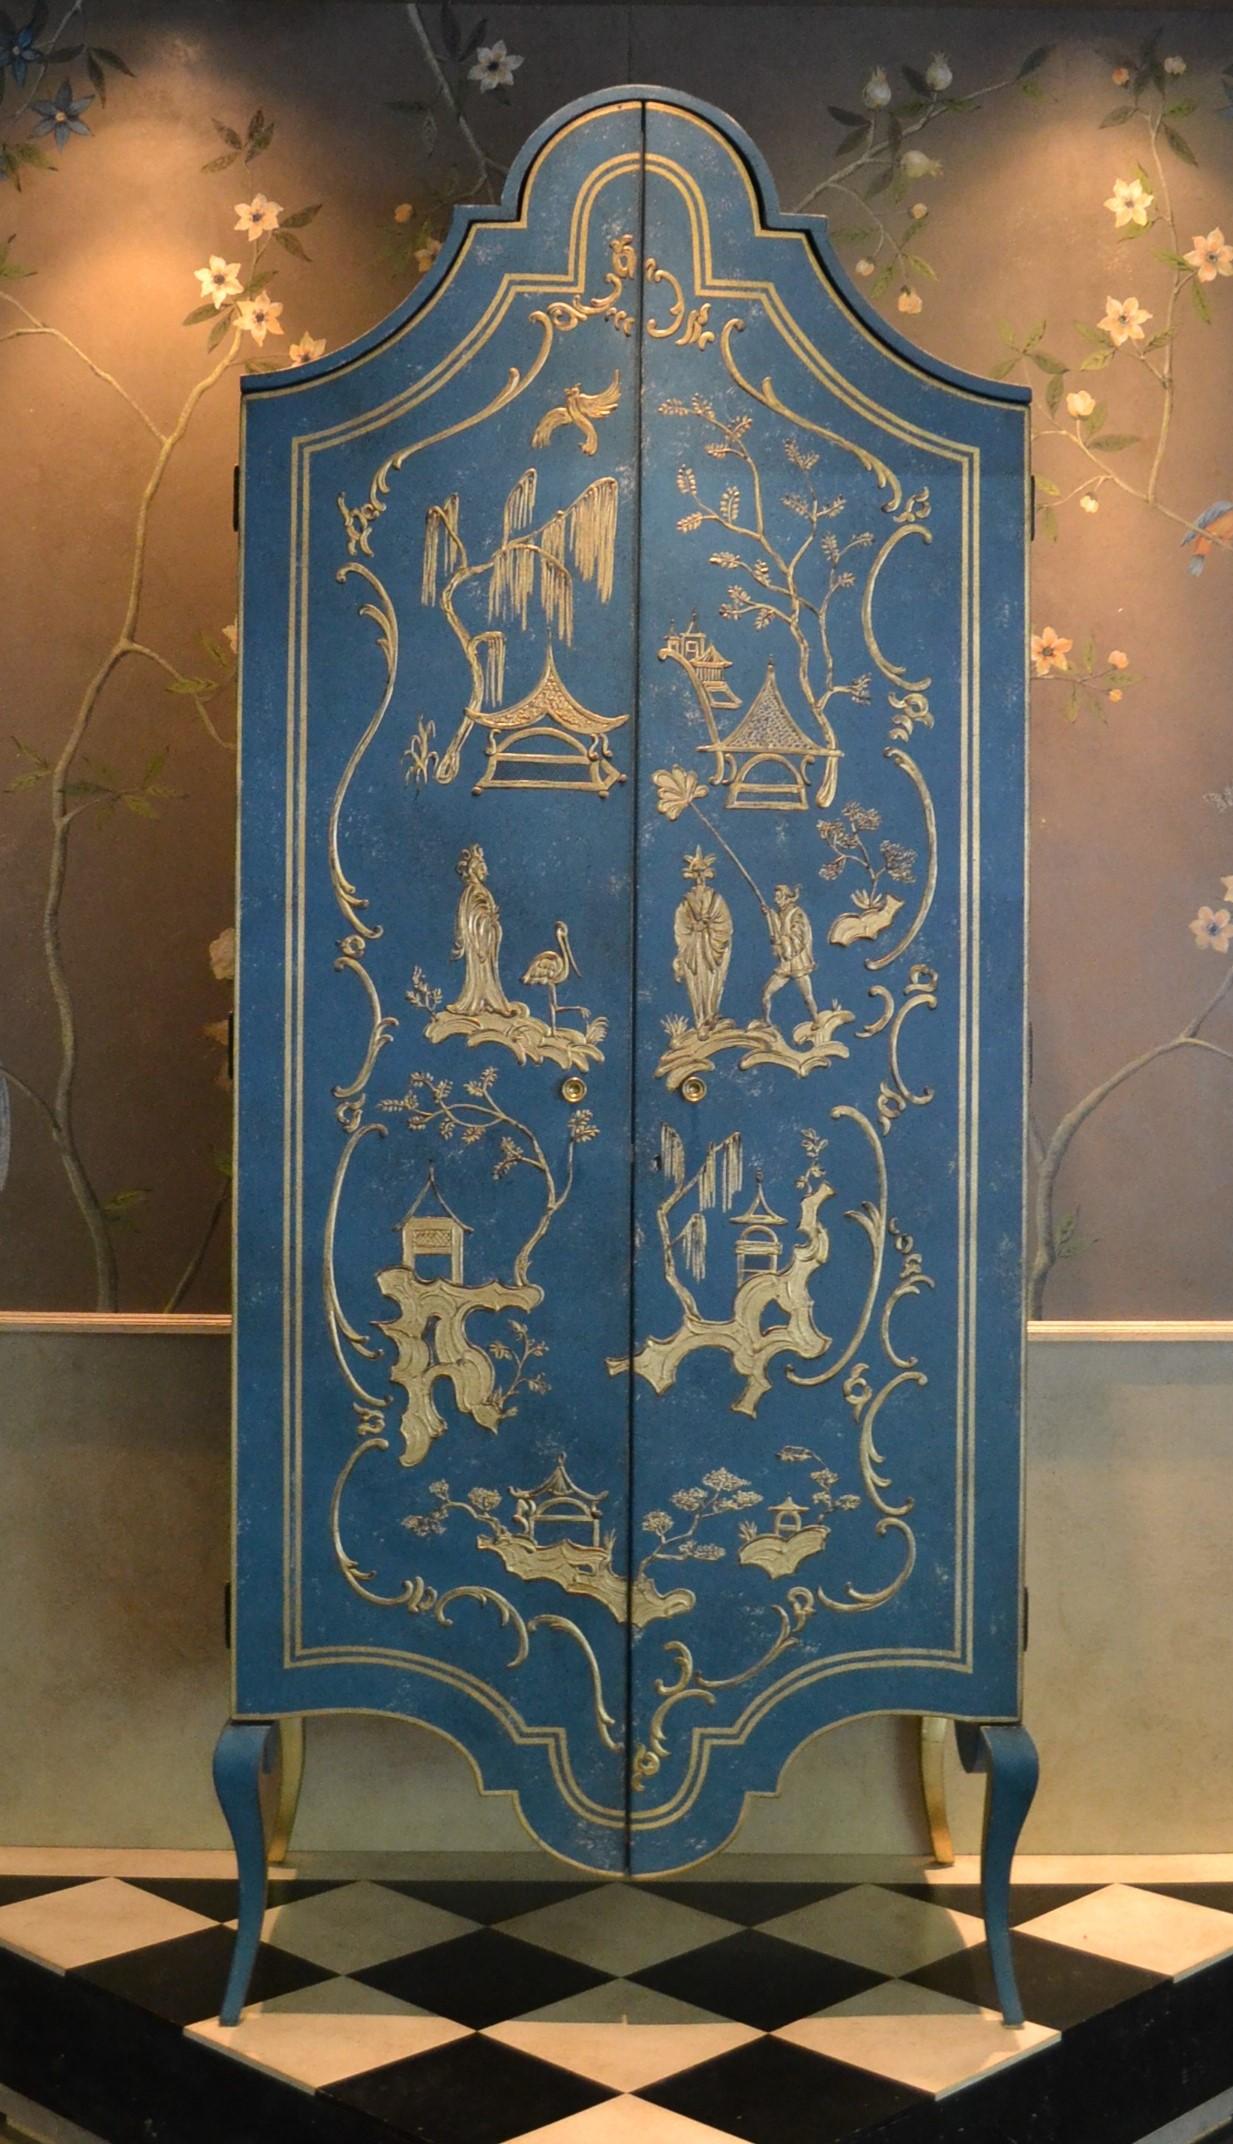 Dans notre collection de meubles peints à la main, nous avons le plaisir de vous présenter l'armoire Tevere, d'un bleu de mer profond, avec un décor en relief de chinoiserie dorée. 
L'ensemble de la façade de cette armoire spectaculaire devient une